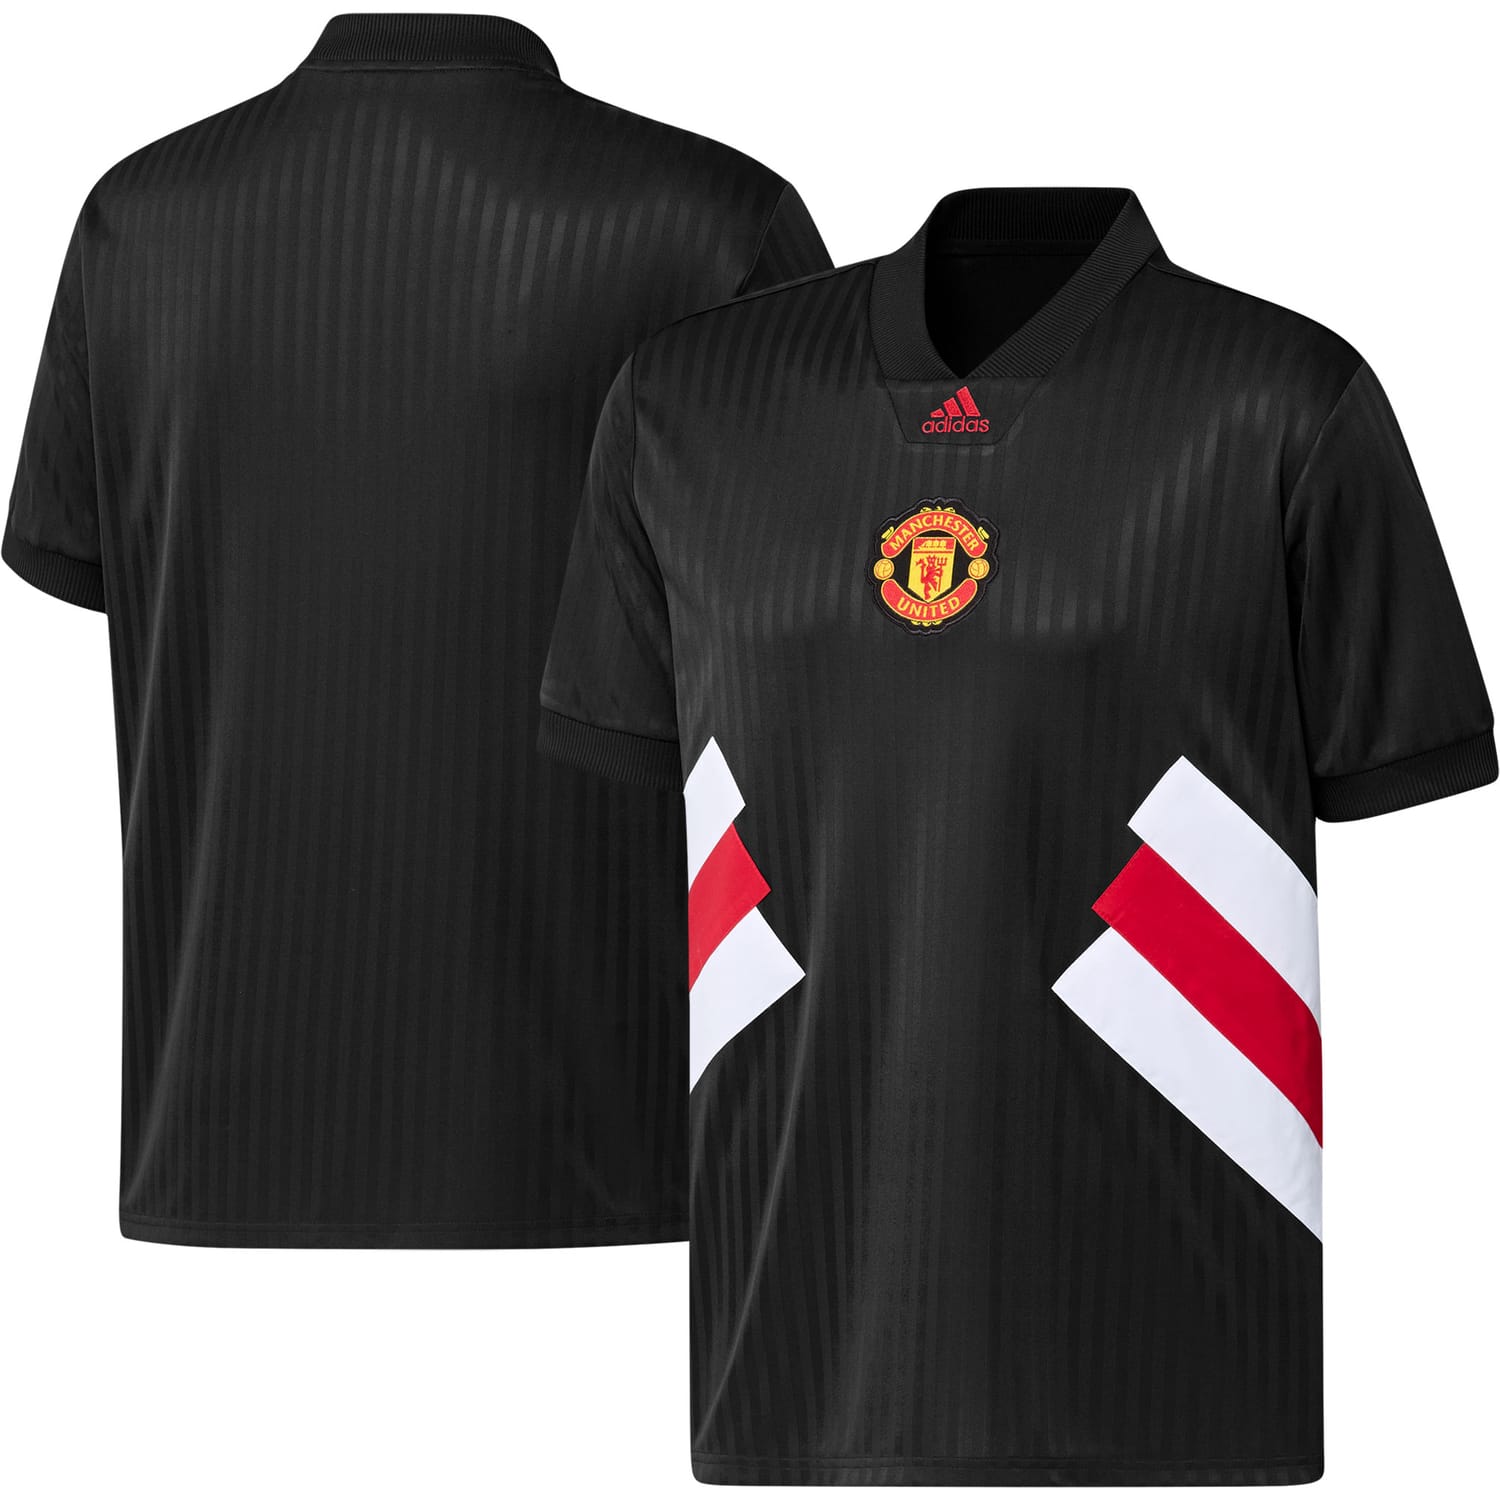 Premier League Manchester United Jersey Shirt Black for Men